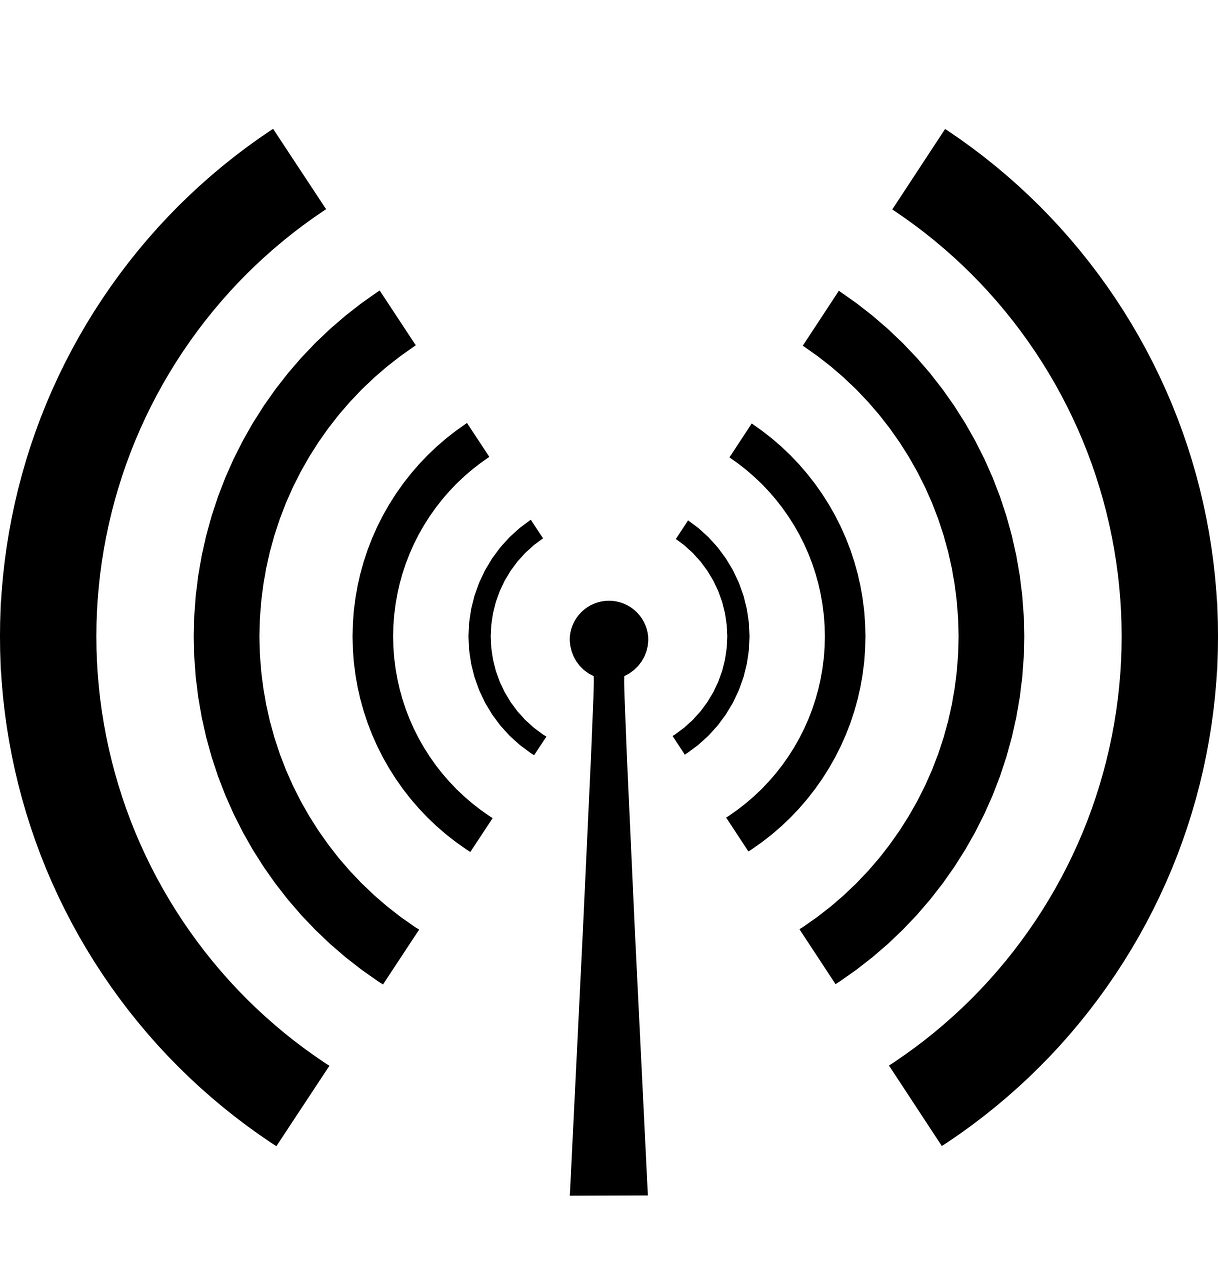 transmitter antenna radio free photo